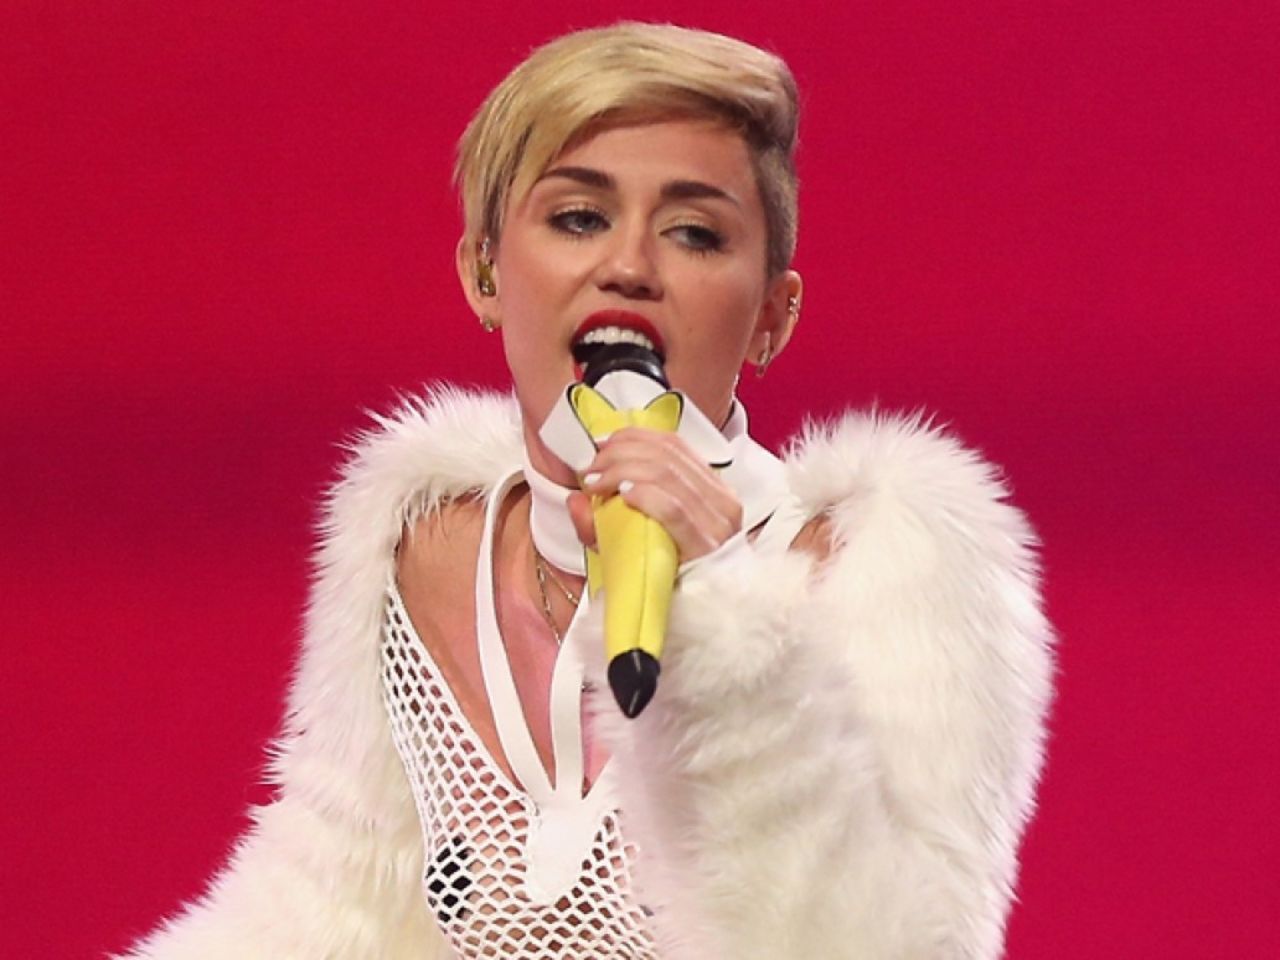 Billy Ray Cyrus le dio a su hija el nombre de "Destiny Hope Cyrus" cuando nació. Según IMDB, la familia de Miley la apodó Smiley, y al final esto se convertiría en Miley. 